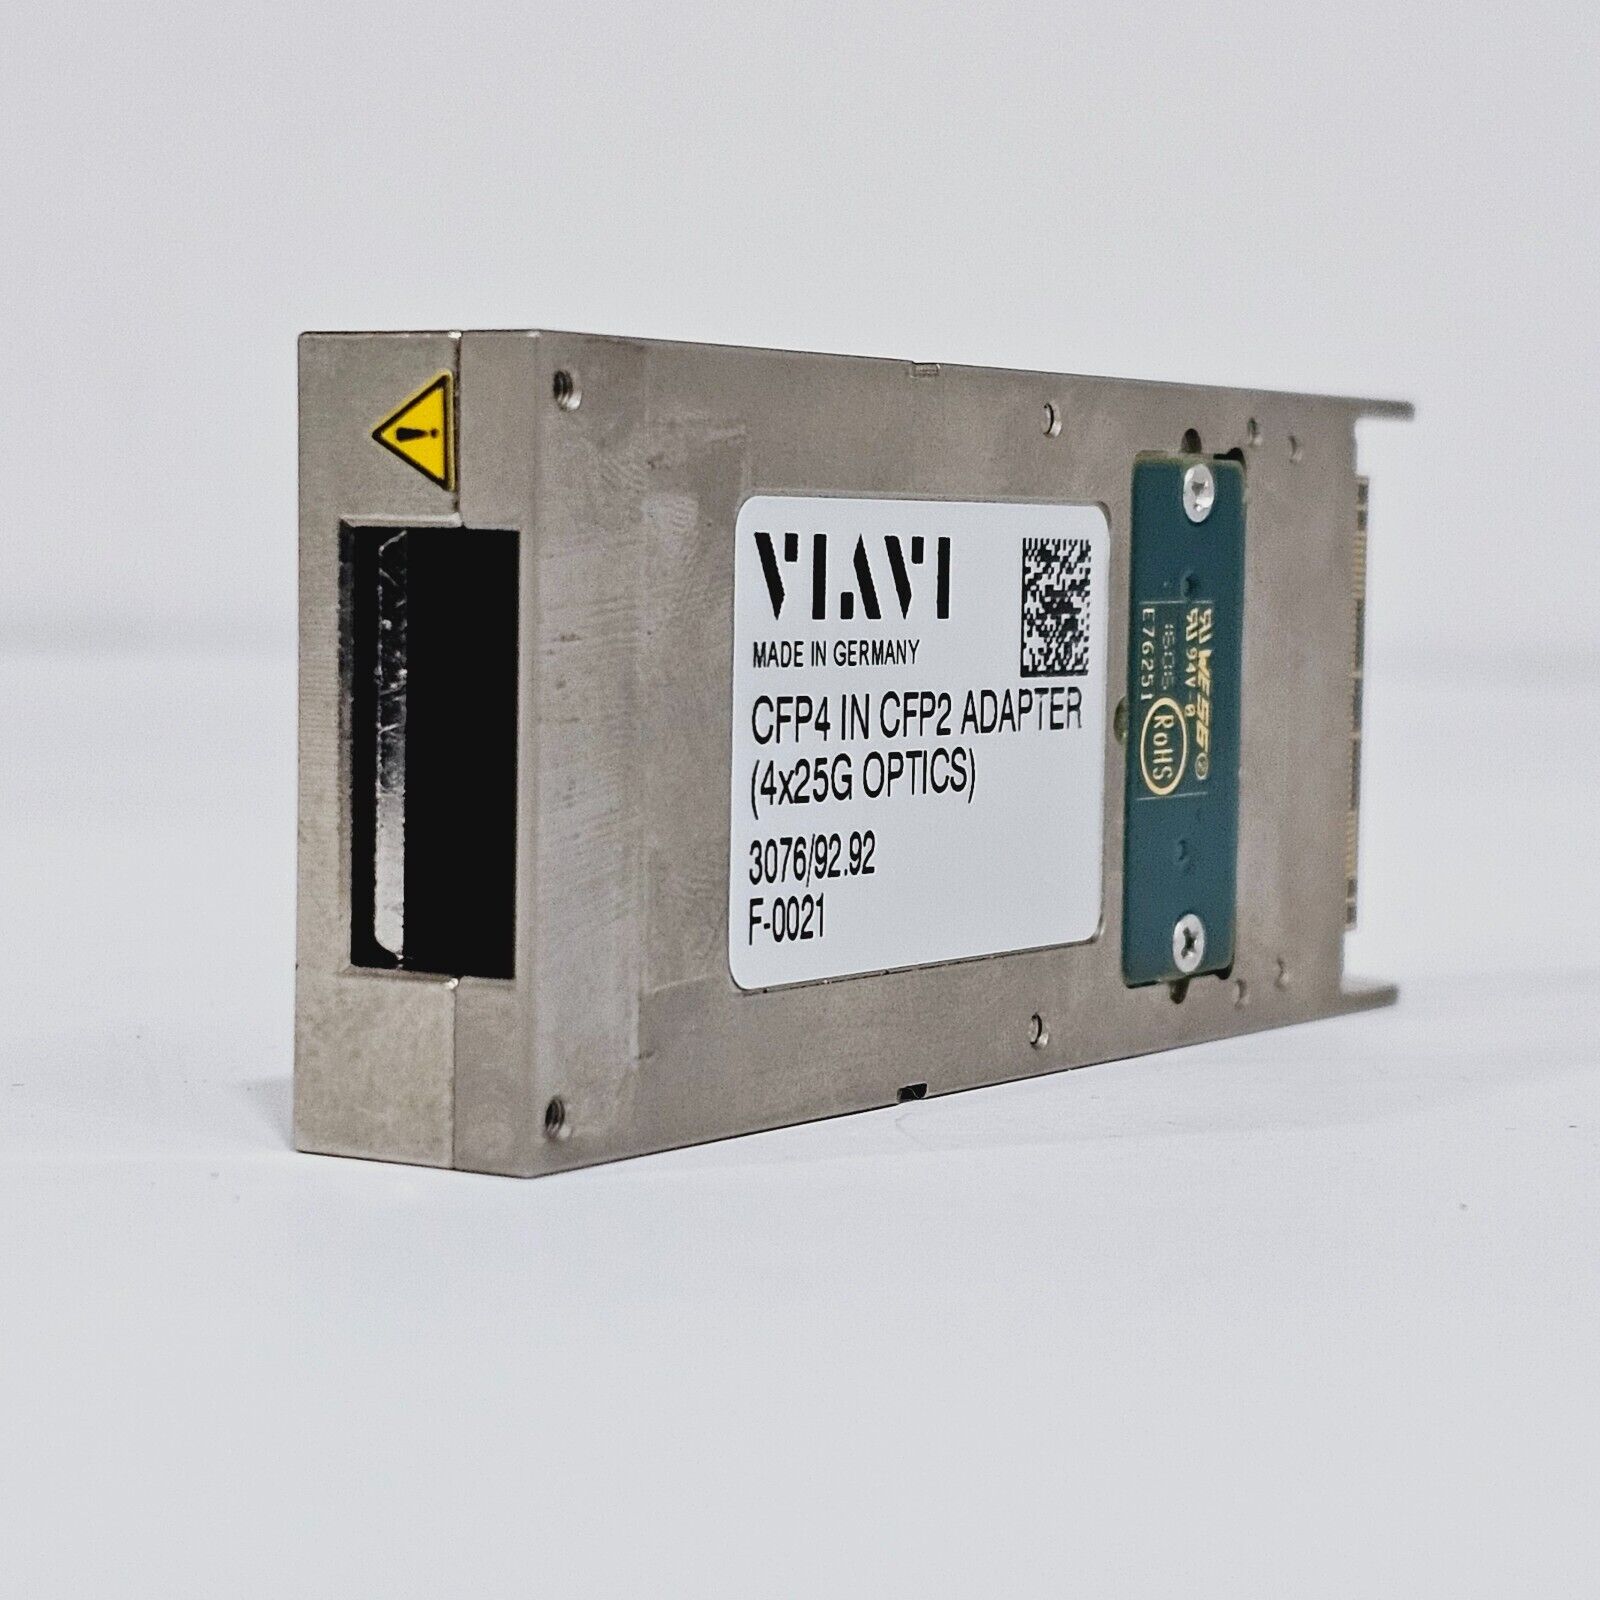 Viavi CFP2 to CFP4 Passive Adapter (4x25G OPTICS) 3076/92.92